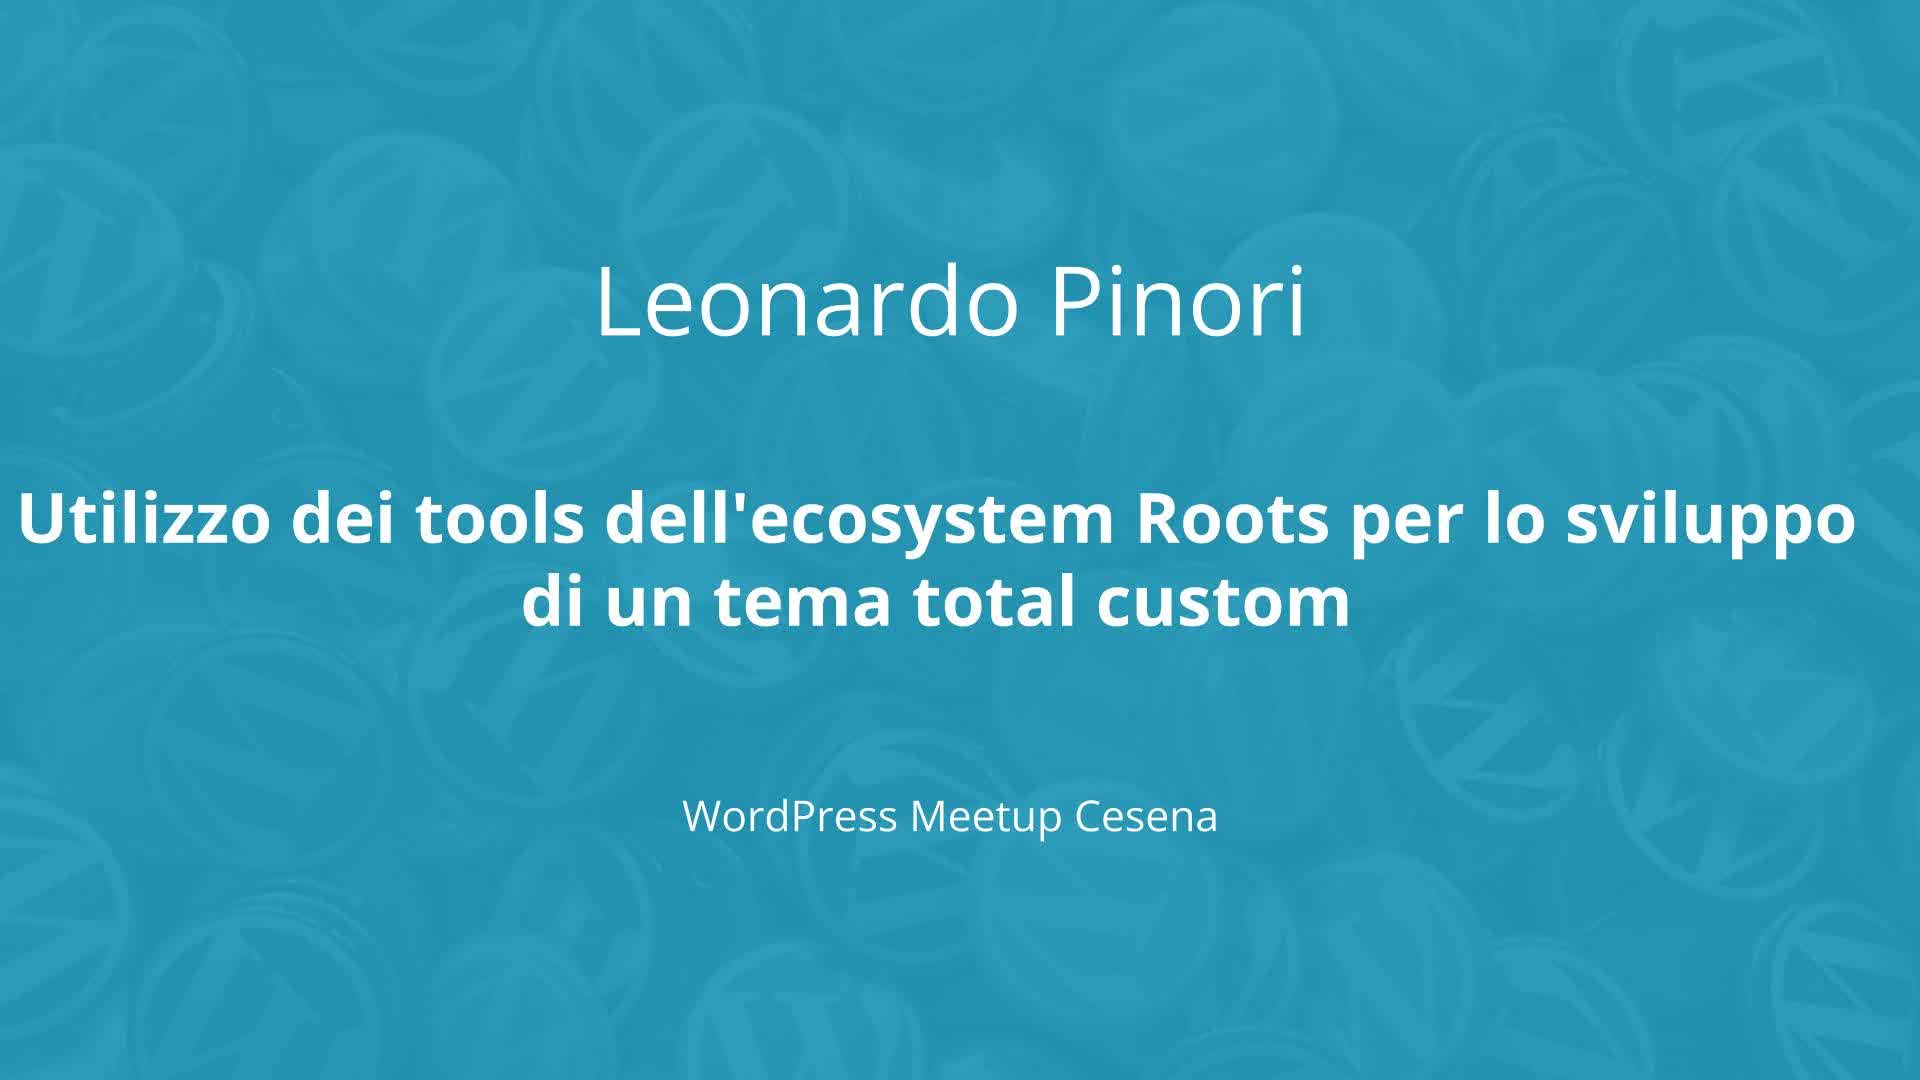 Leonardo Pinori: Utilizzo dei tools dell’ecosystem Roots per lo sviluppo di un tema total custom